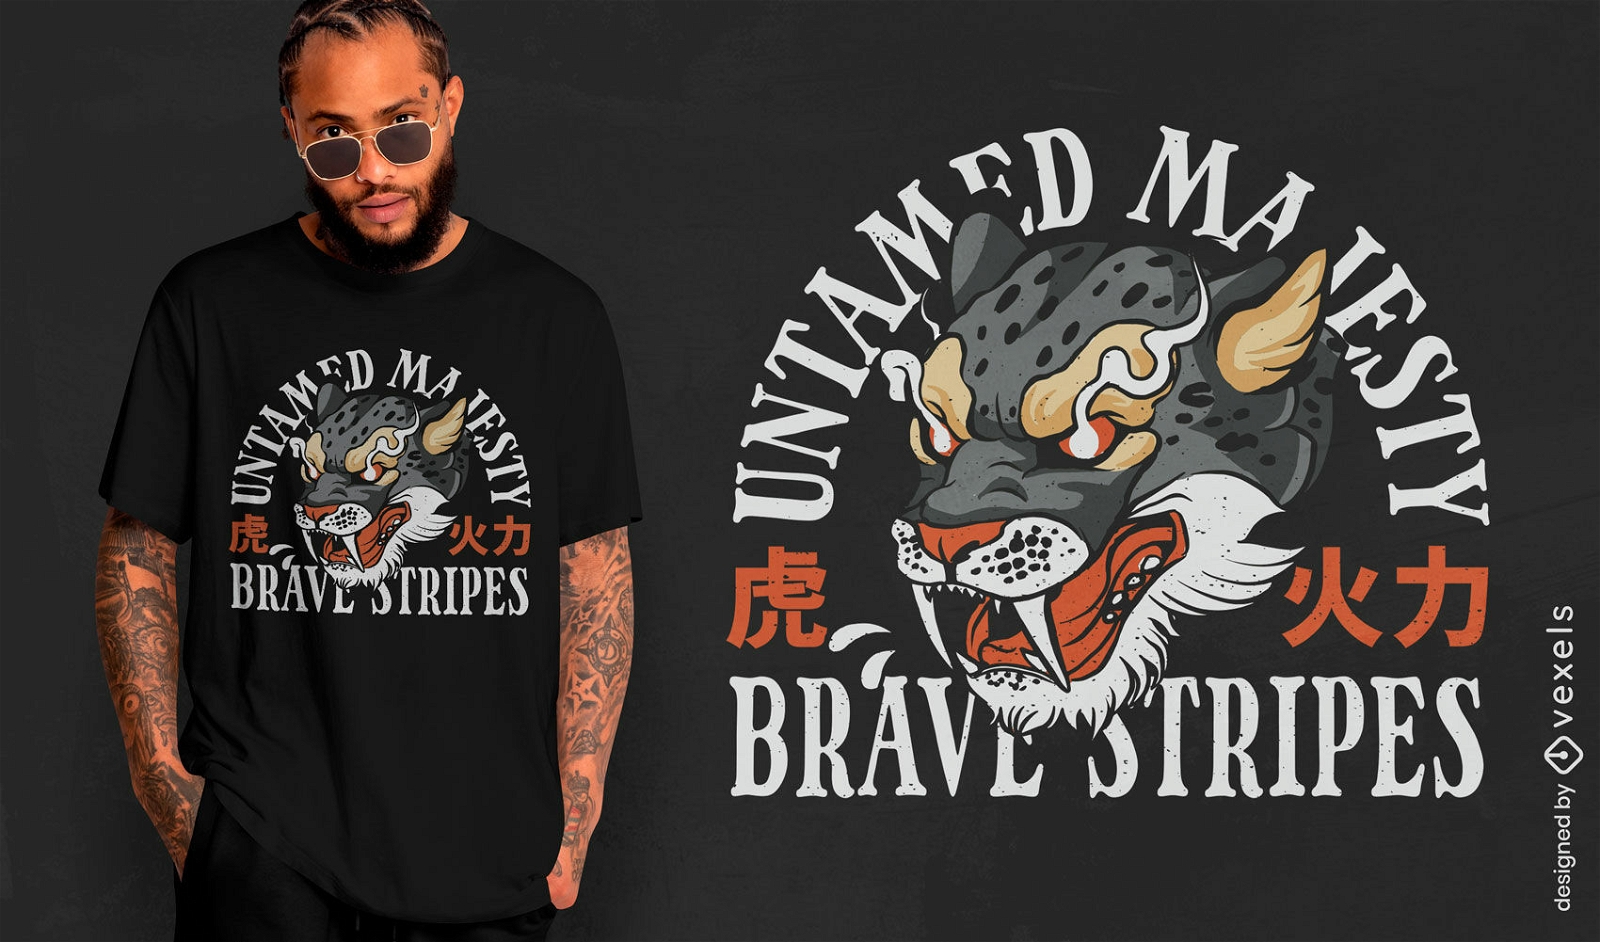 Brave stripes tiger t-shirt design 